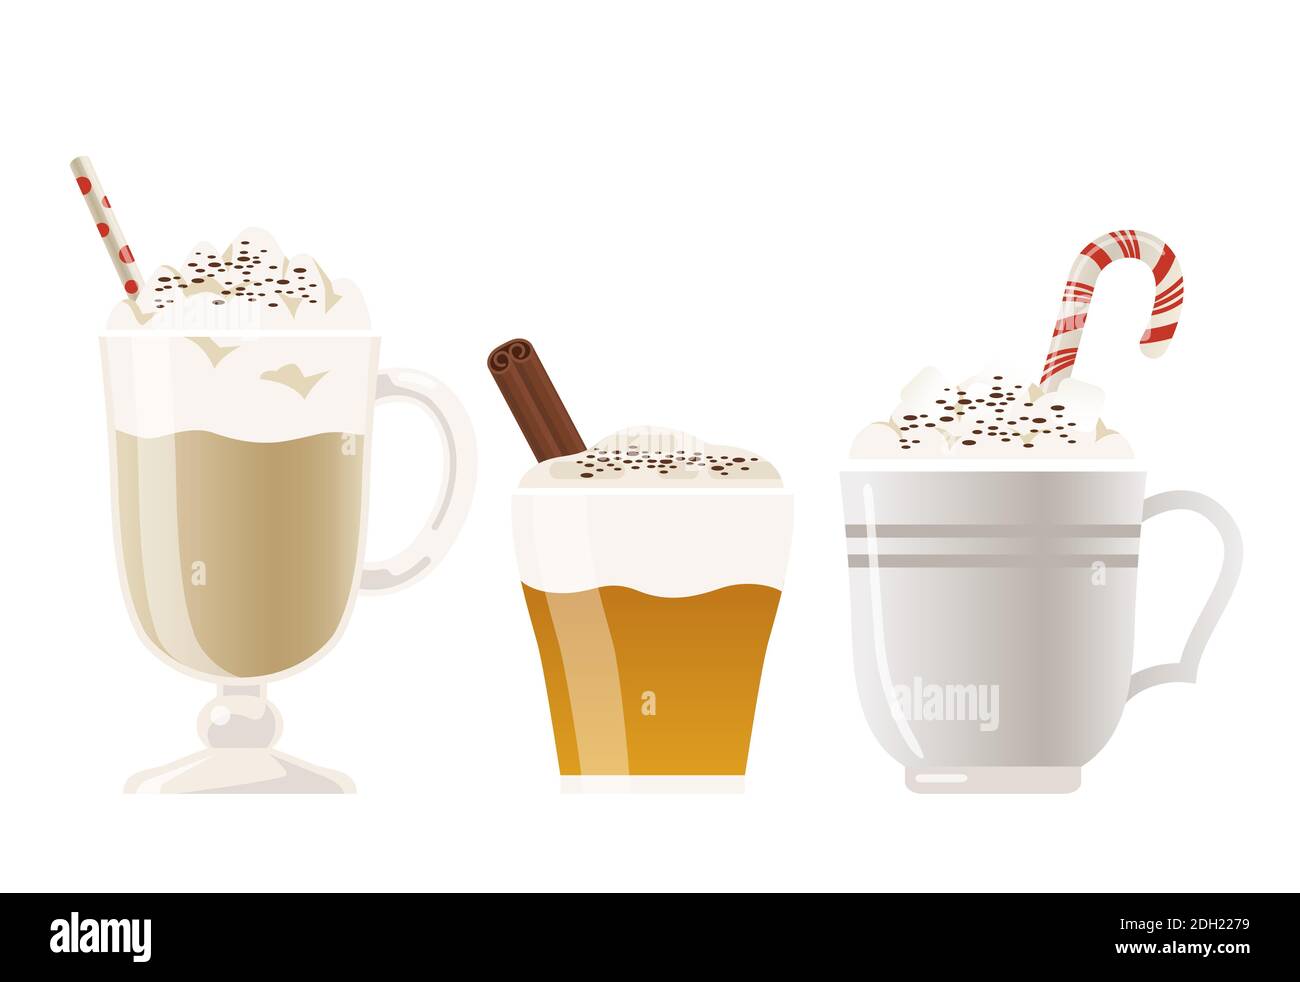 Una collezione di bevande calde che vengono spesso bevute in inverno, come sidro di mele, cioccolata calda con marshmallow o caffè caldo. Illustrazione Vettoriale